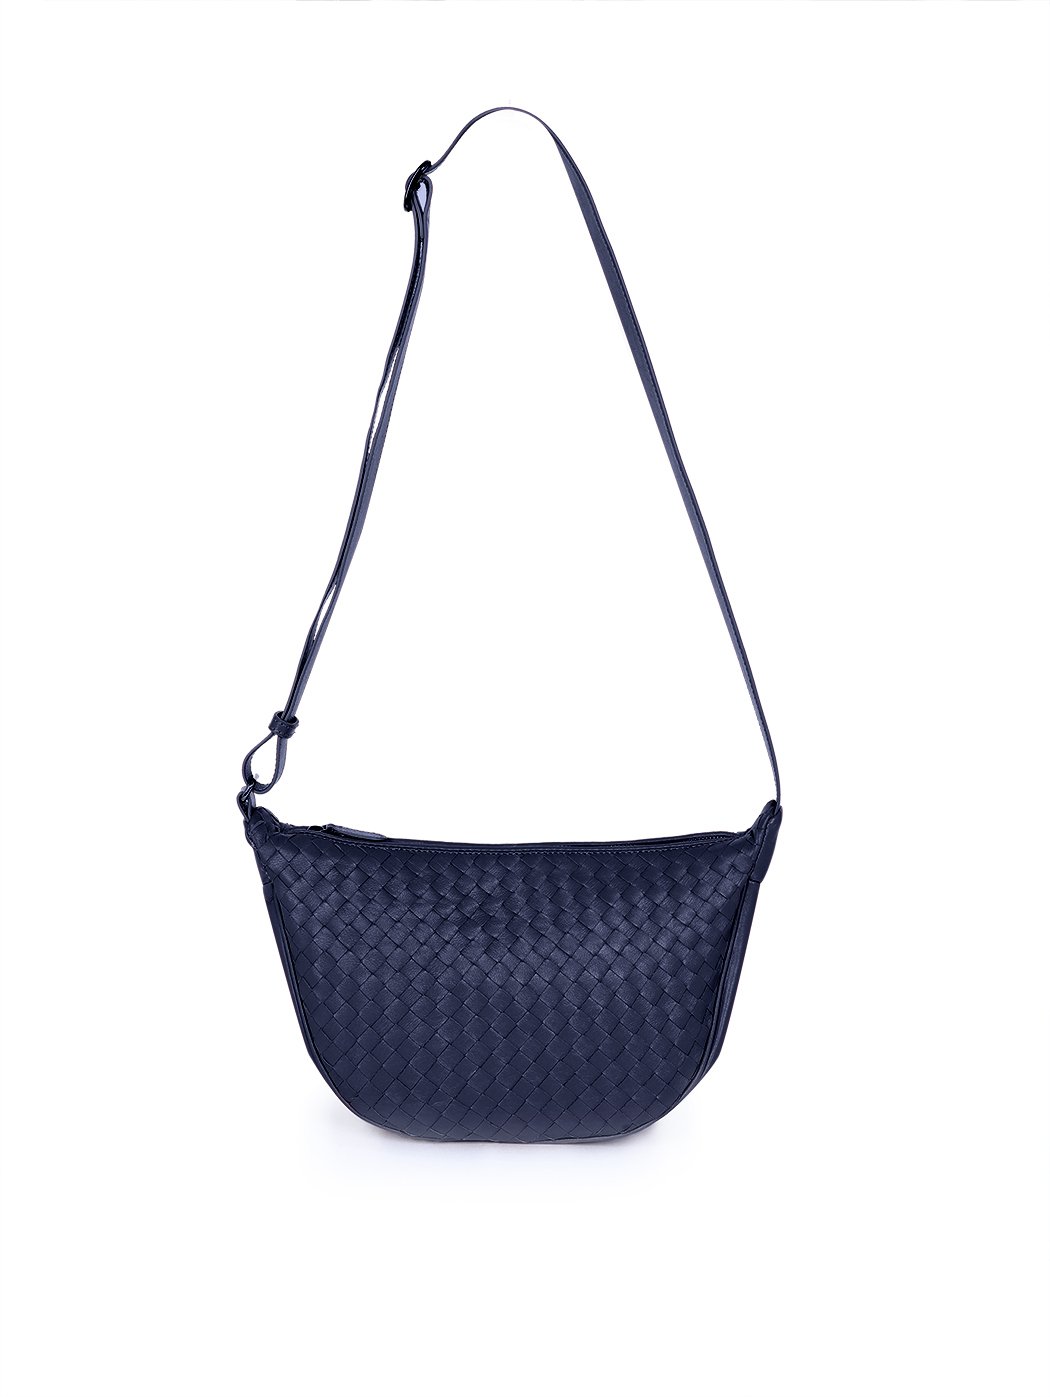 Плетеная сумка – полумесяц коллекции Intrecci синего цвета